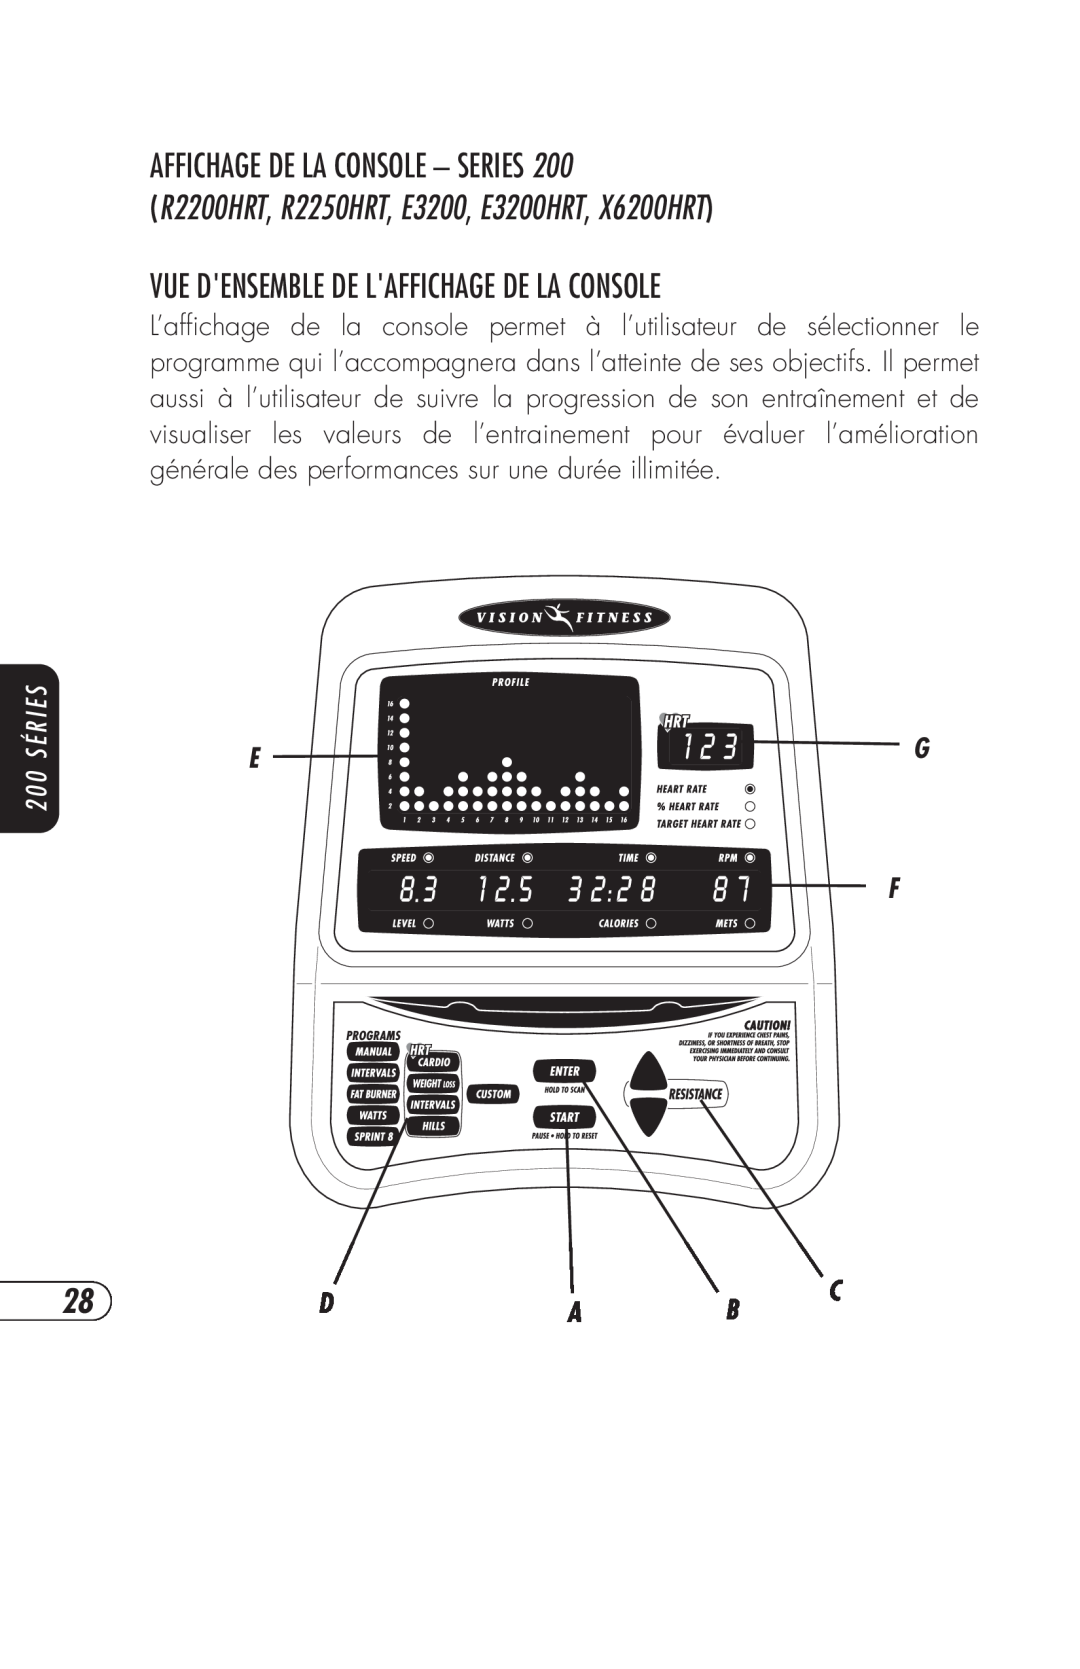 Vision Fitness manual Affichage De La Console - Series, R2200HRT, R2250HRT, E3200, E3200HRT, X6200HRT, 2 0 0 S É R I E S 